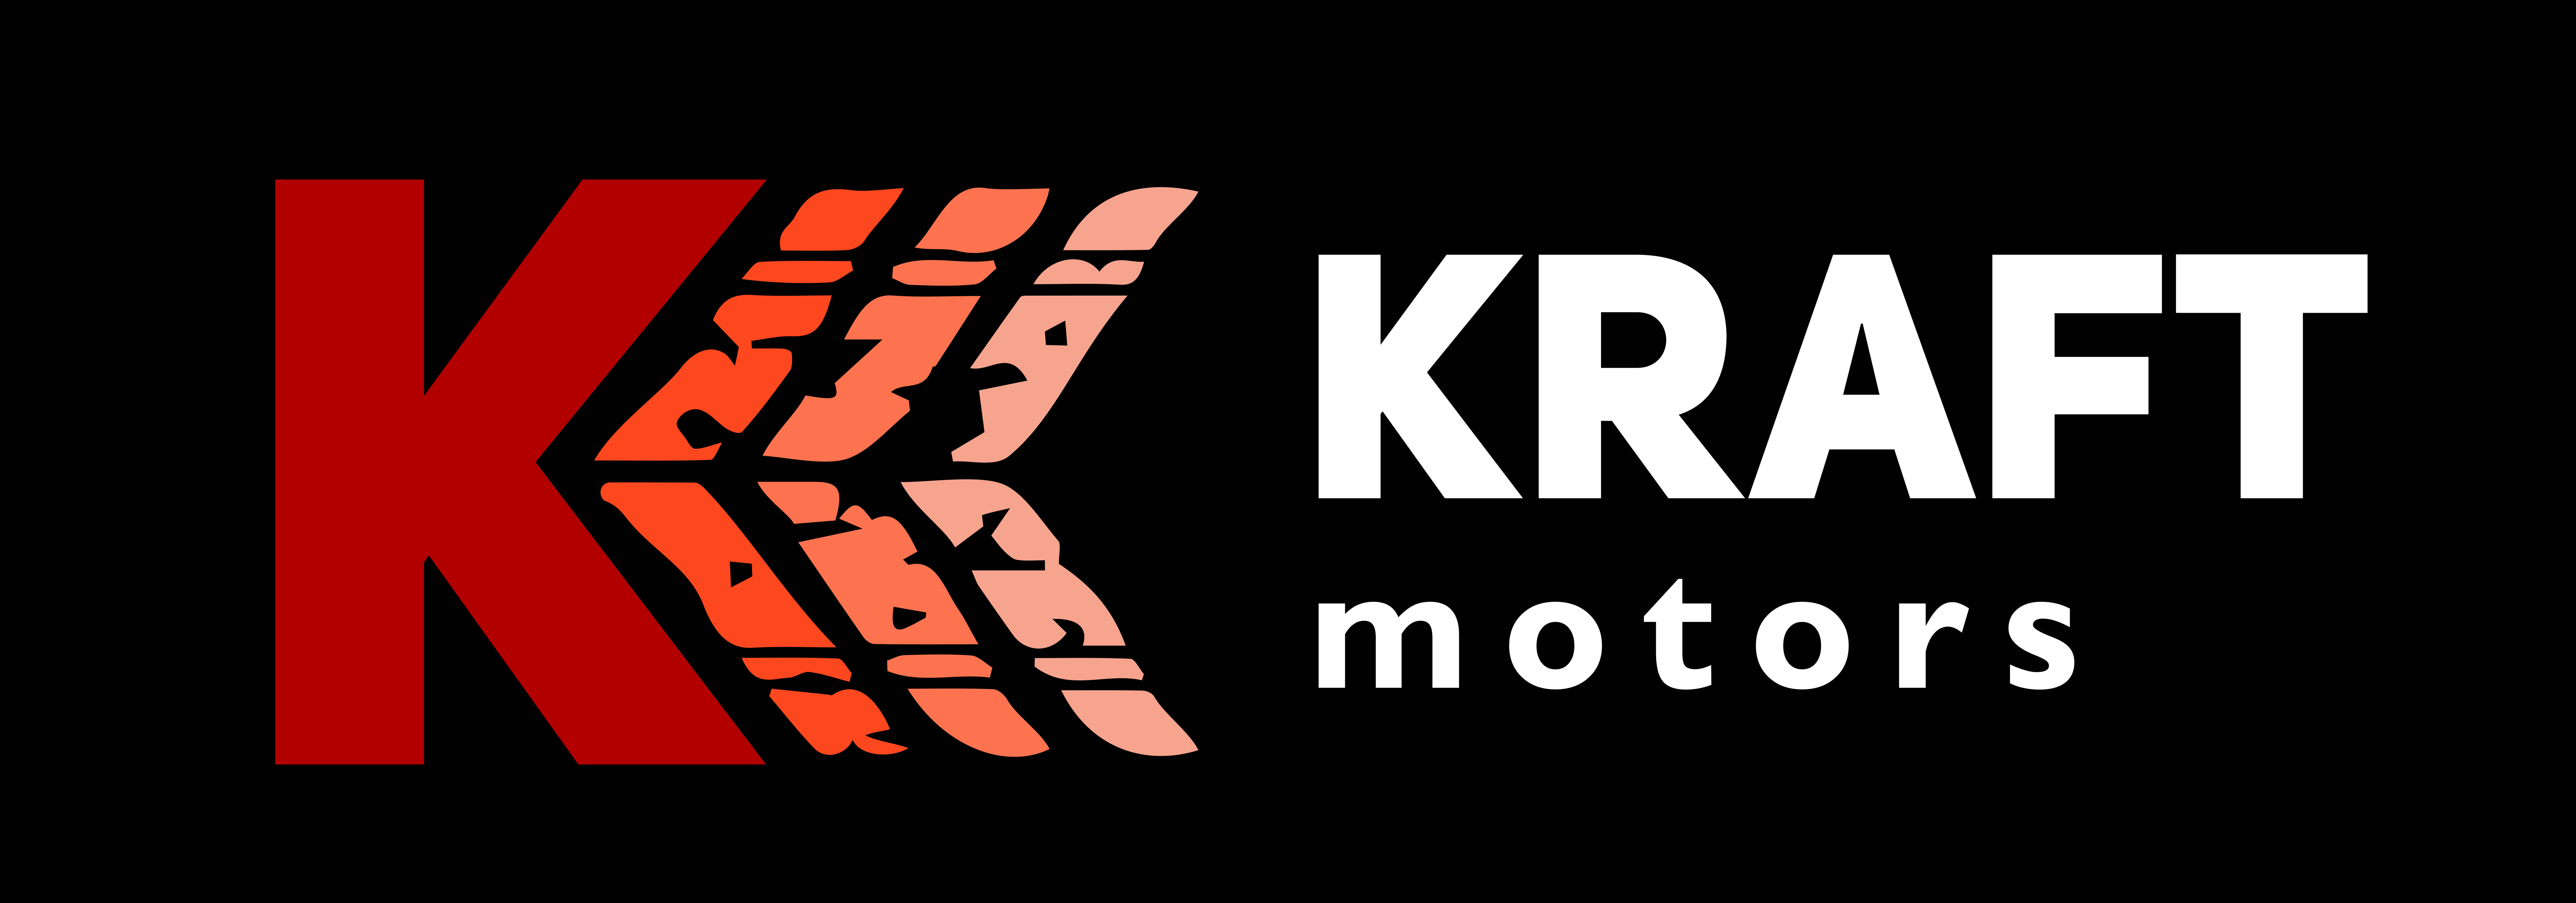 Kraft motors